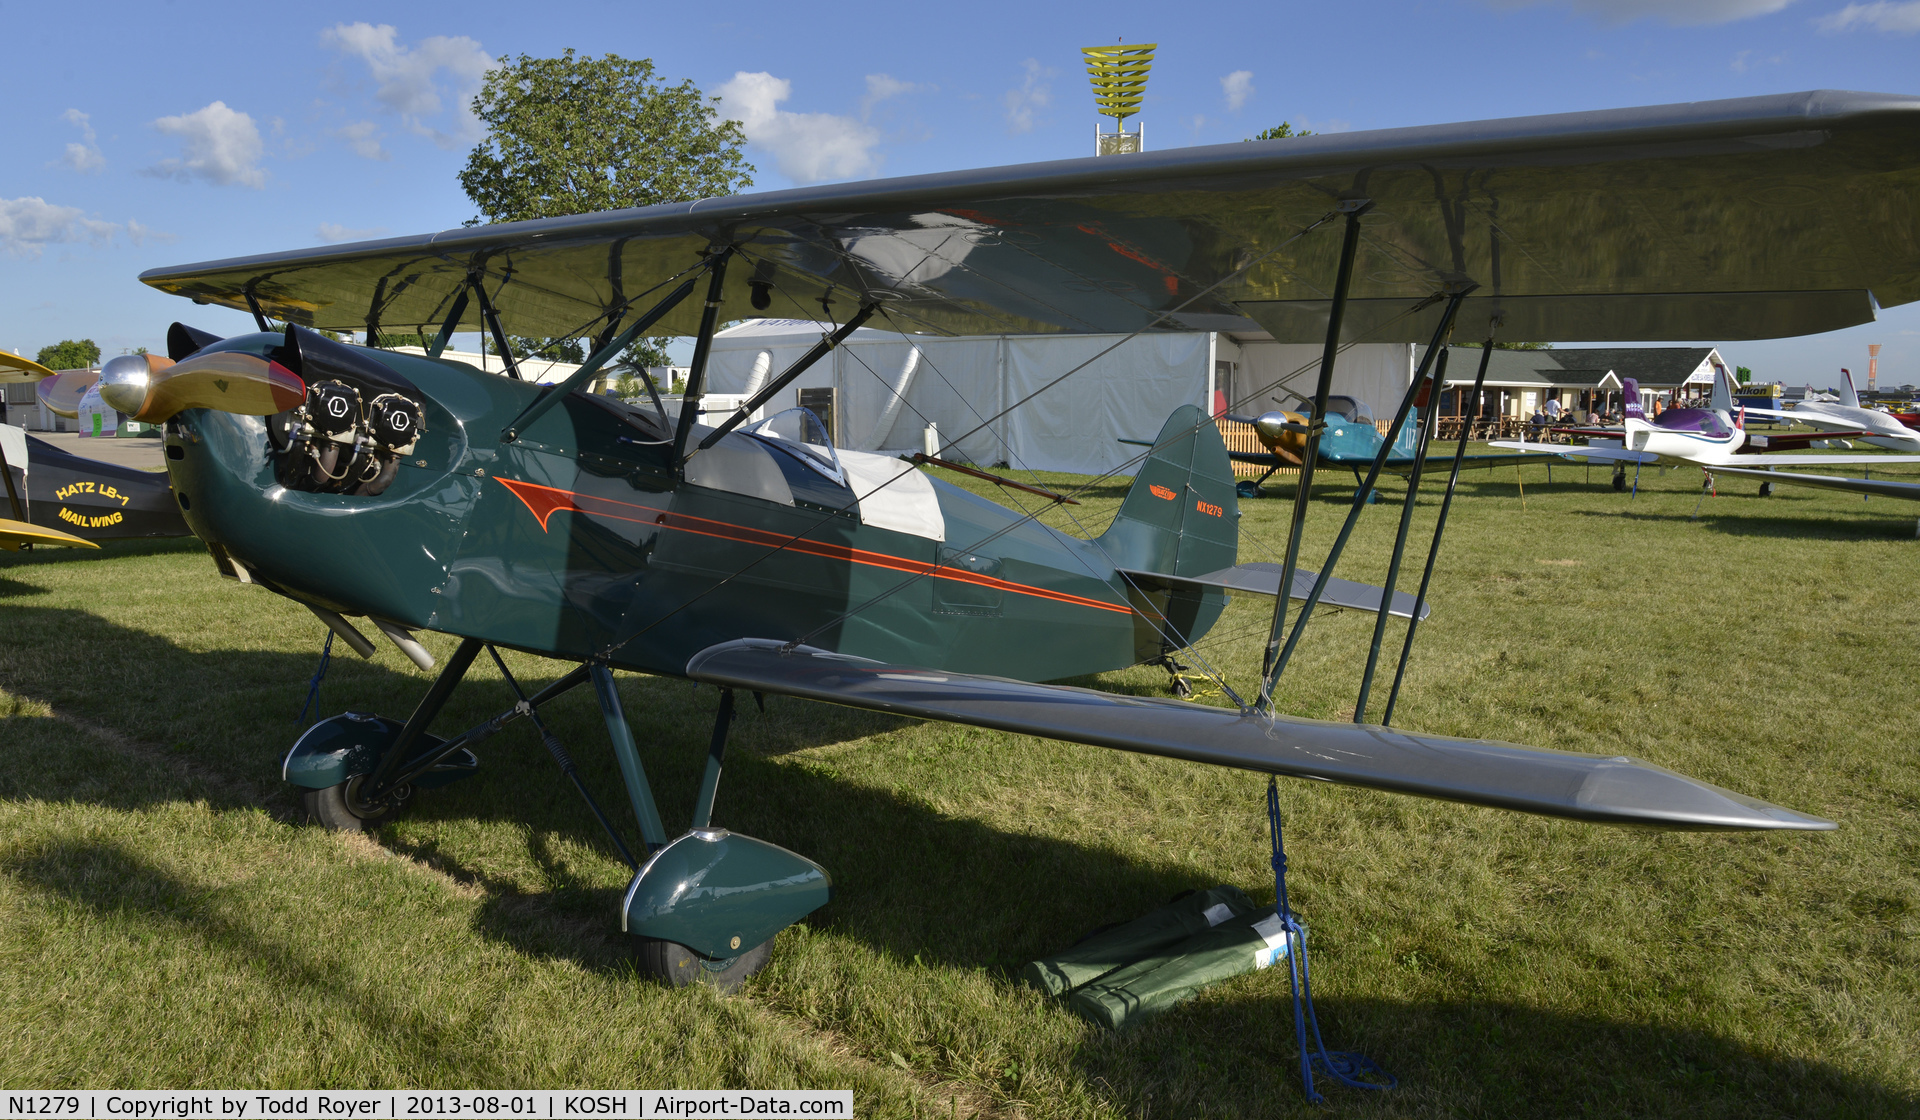 N1279, Hatz CB-1 C/N 279, Airventure 2013